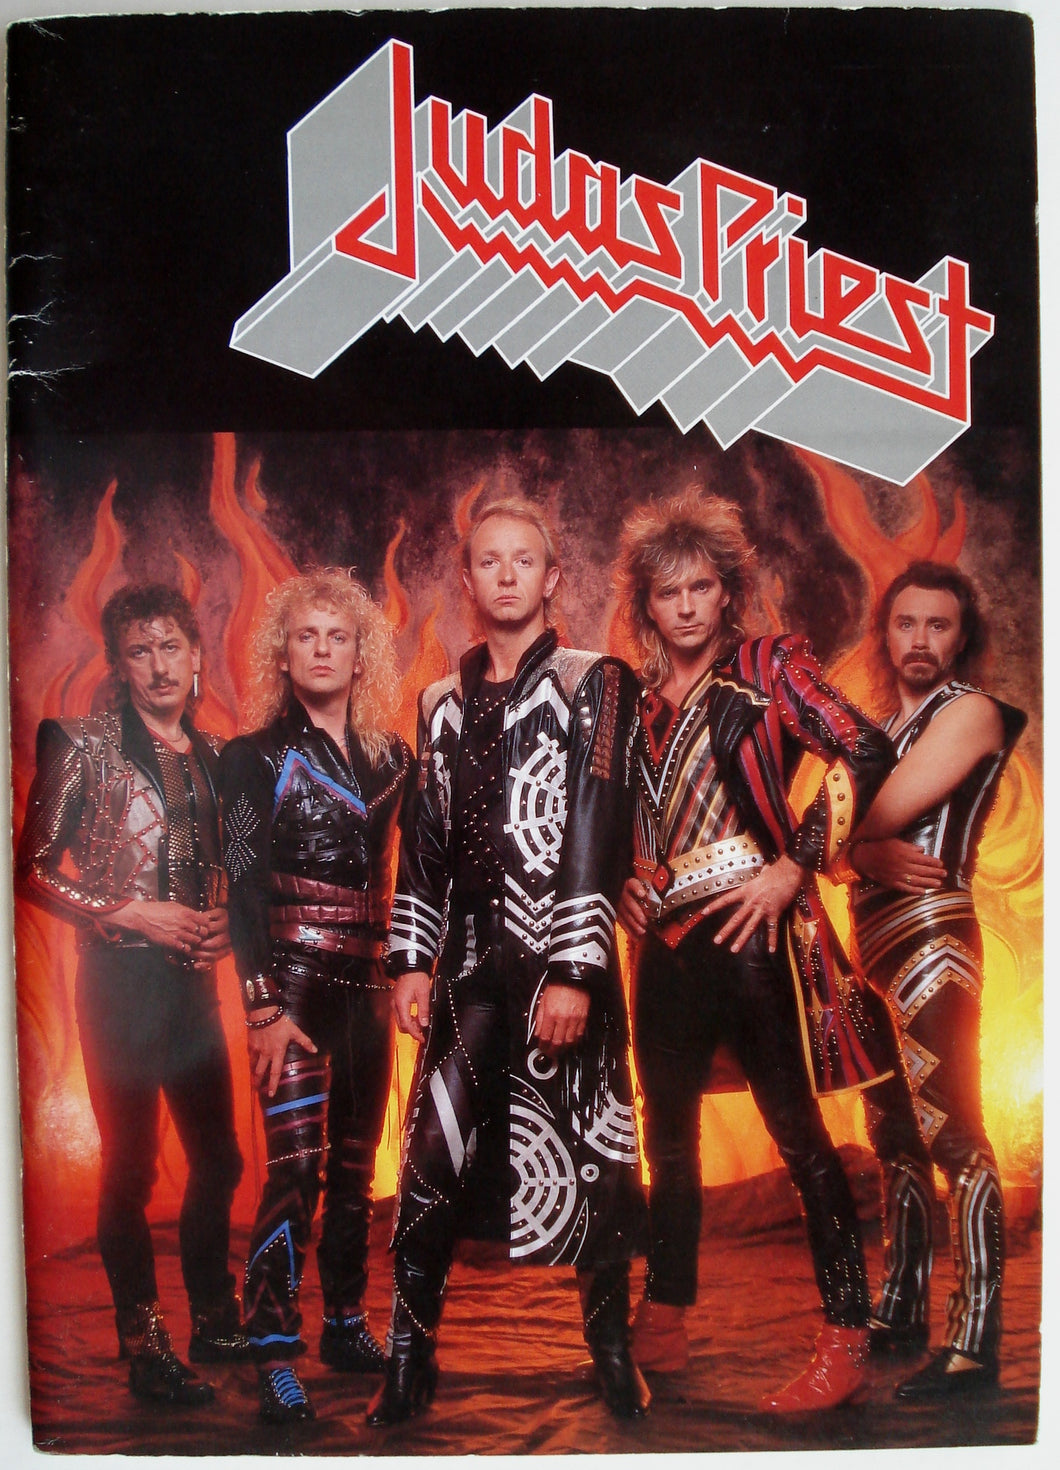 Judas Priest - 1986